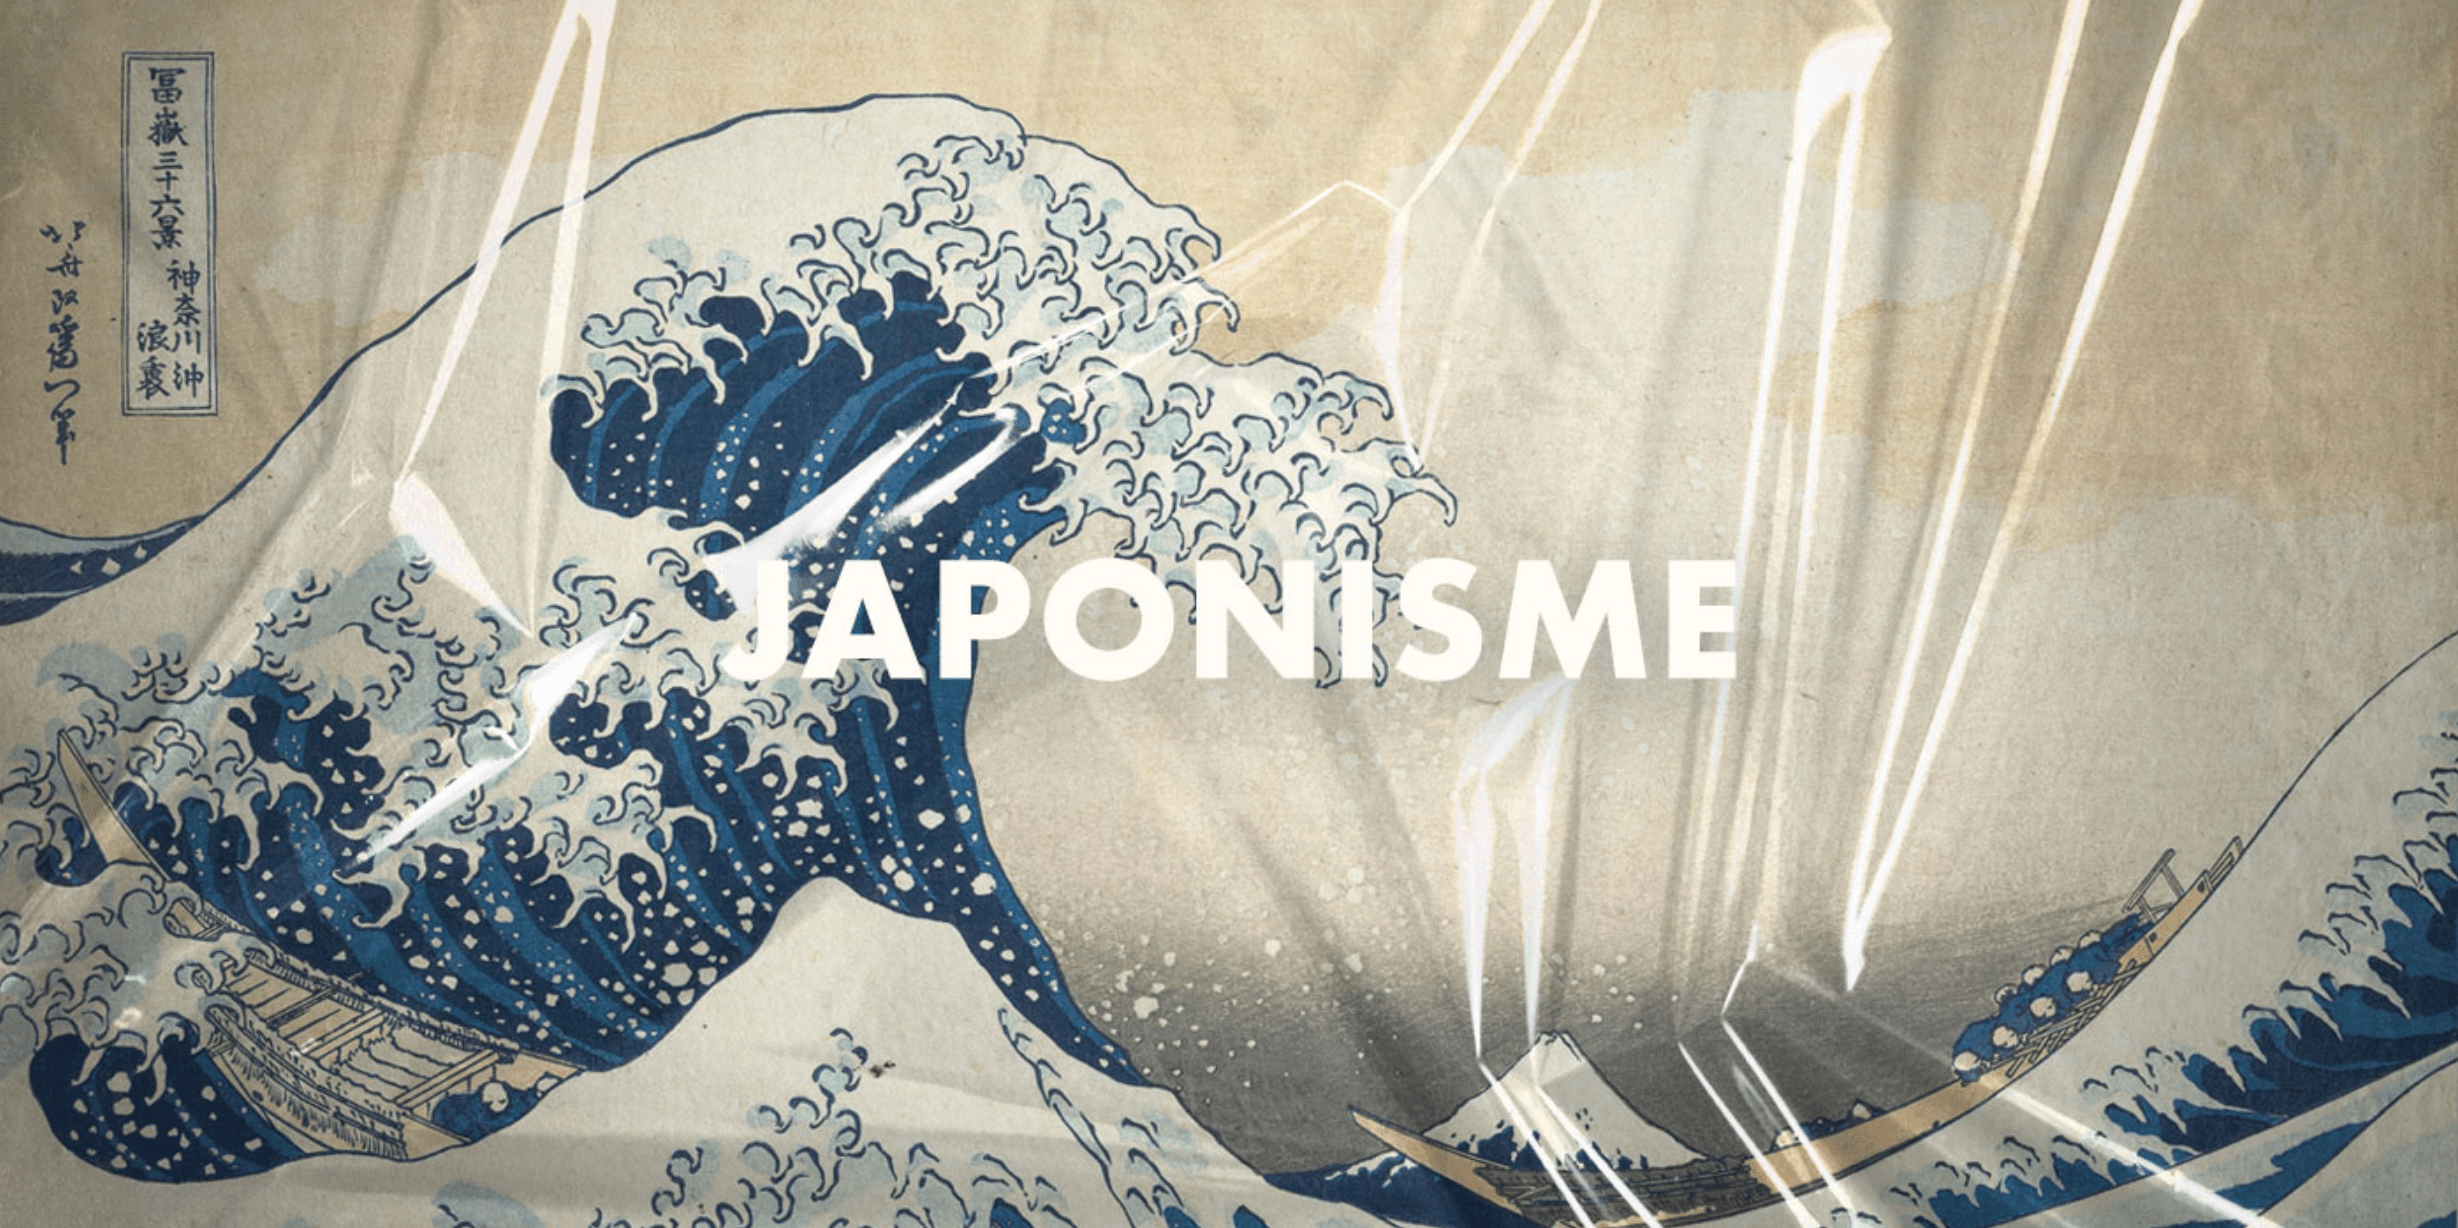 Japonisme - Chủ nghĩa Nhật Bản và sức ảnh hưởng mạnh mẽ đến nghệ thuật hiện đại